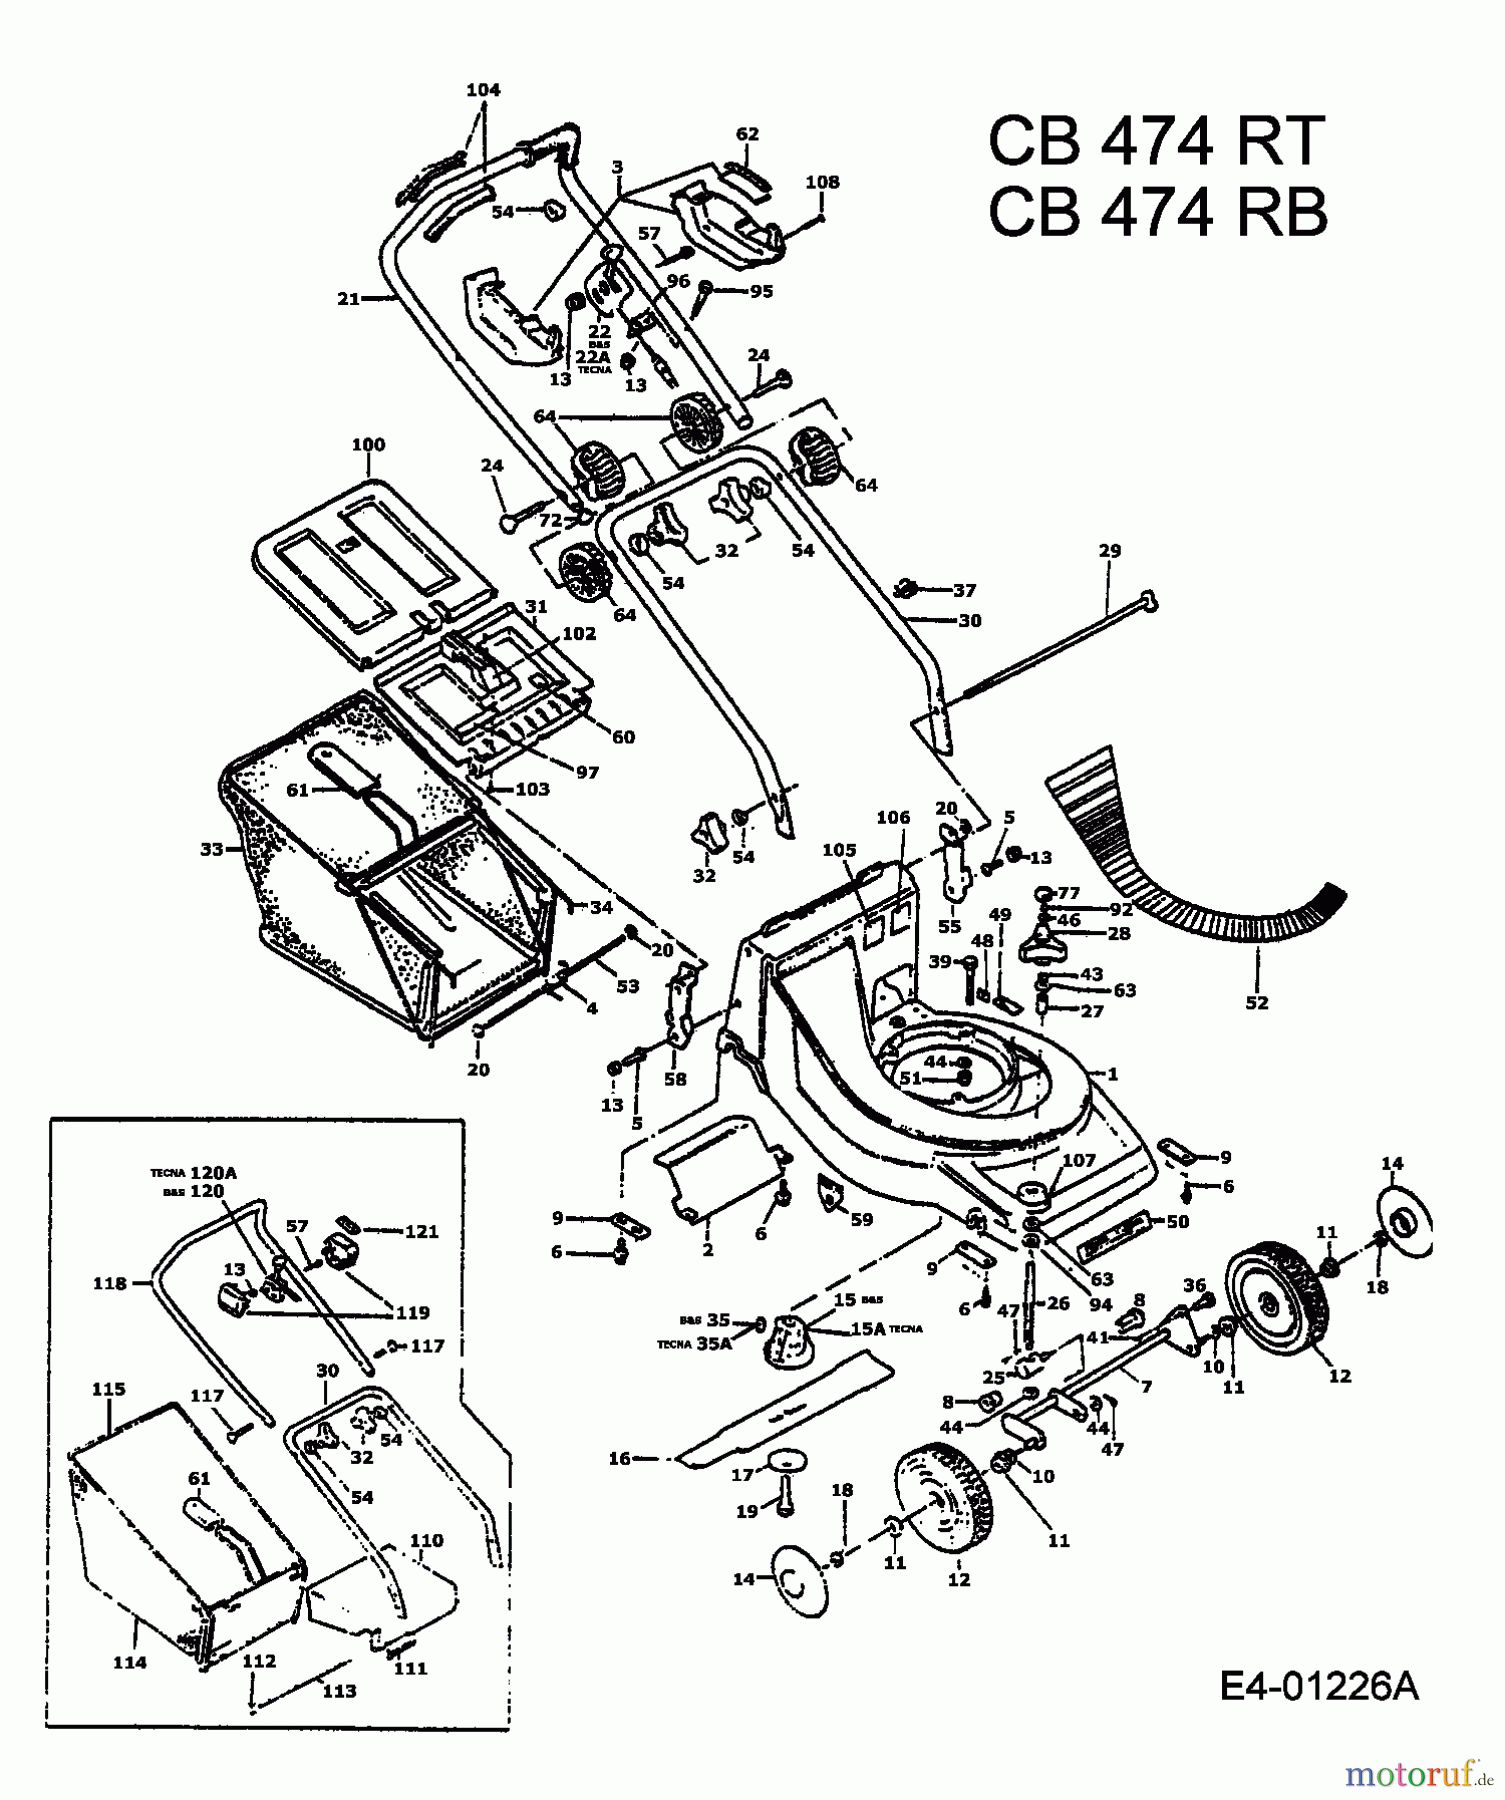  MTD Tondeuse thermique tractée CB 474 RB 901B467A004  (1994) Machine de base